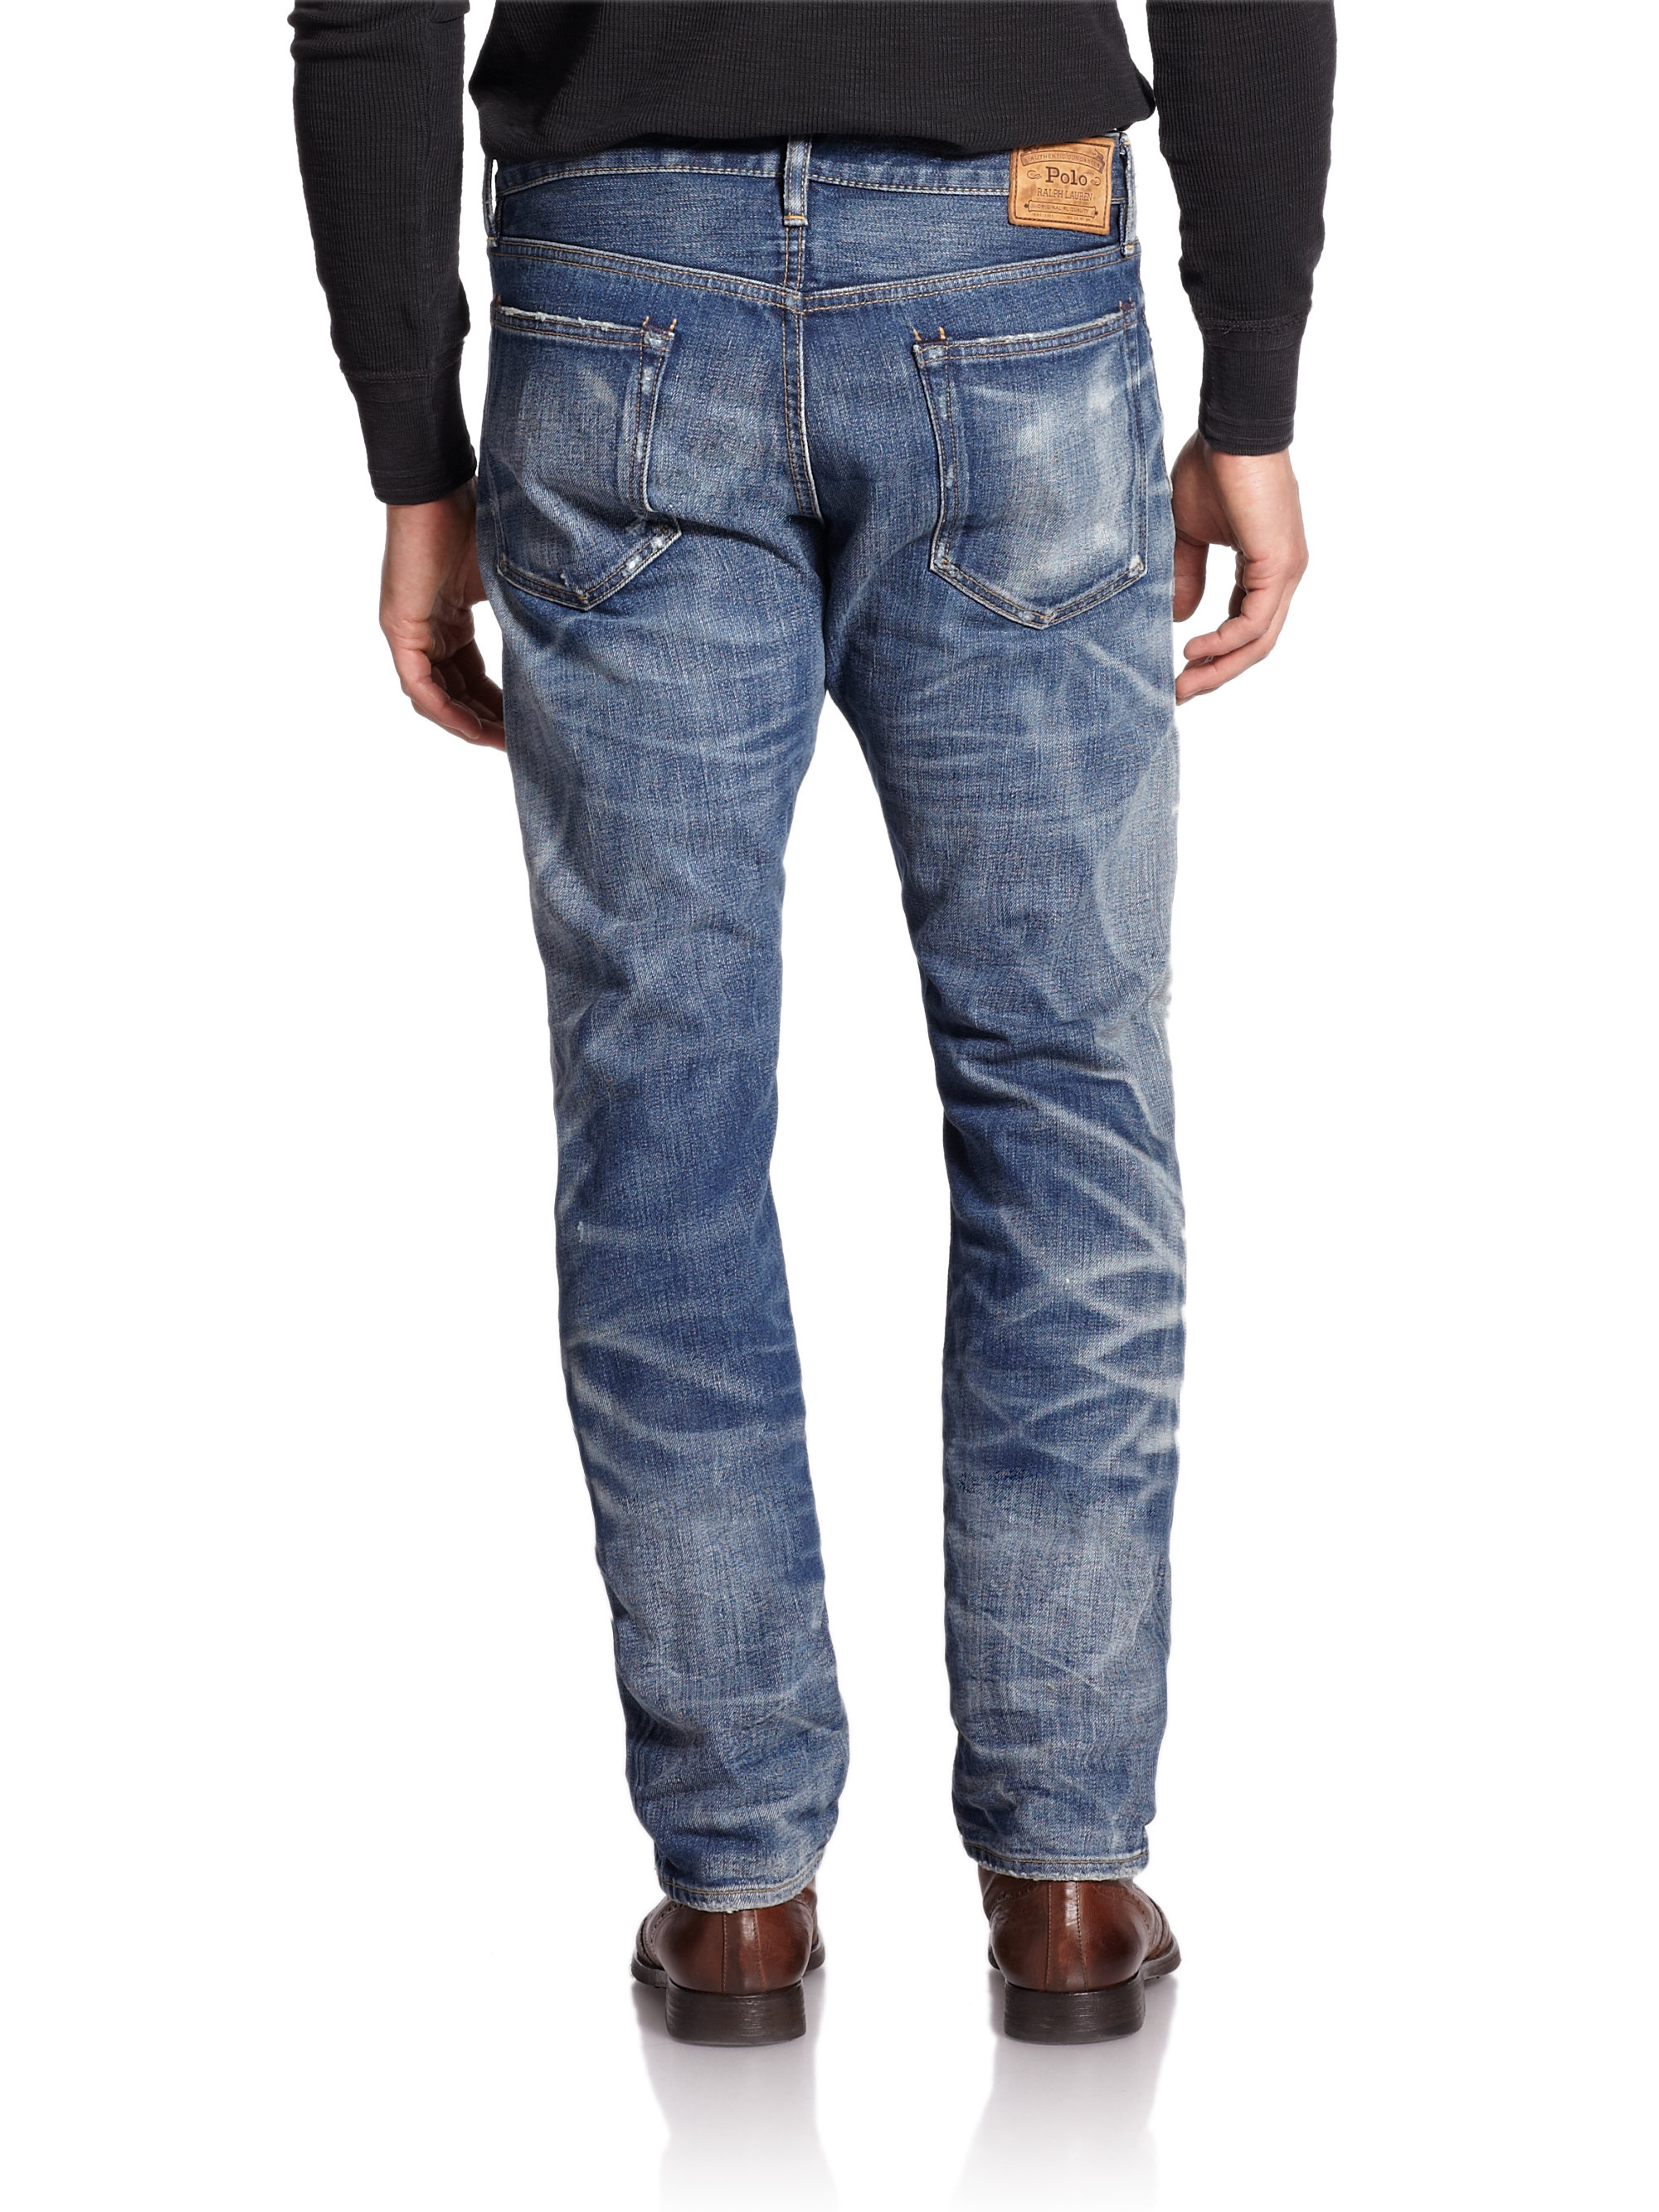 Lyst - Polo Ralph Lauren Varick Slim Straight-leg Jeans in Blue for Men